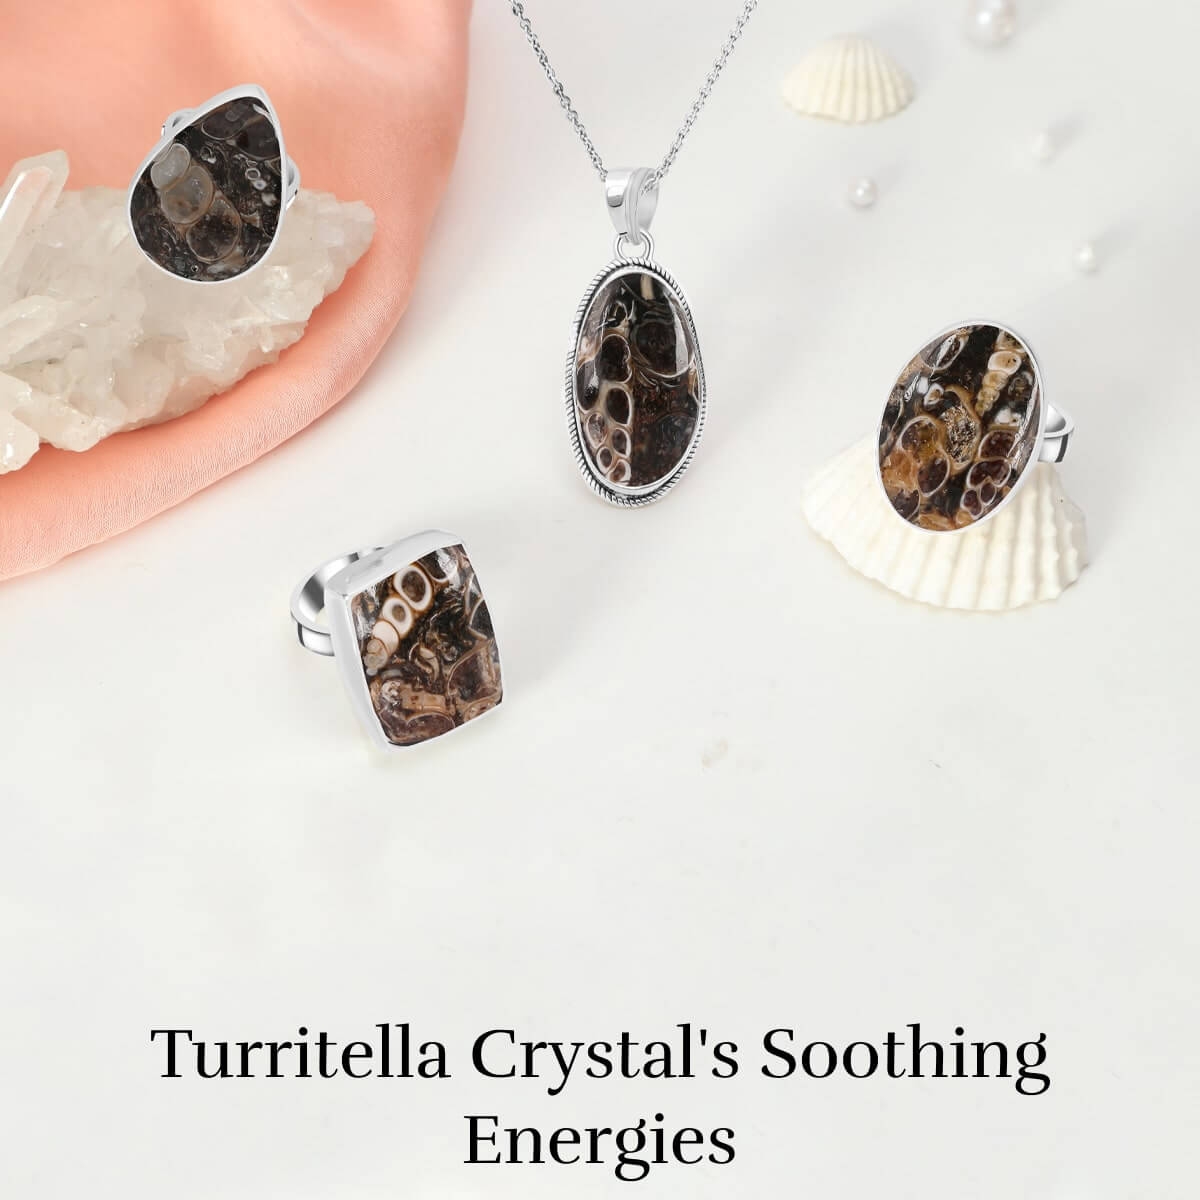 Healing Properties of Turritella Crystal